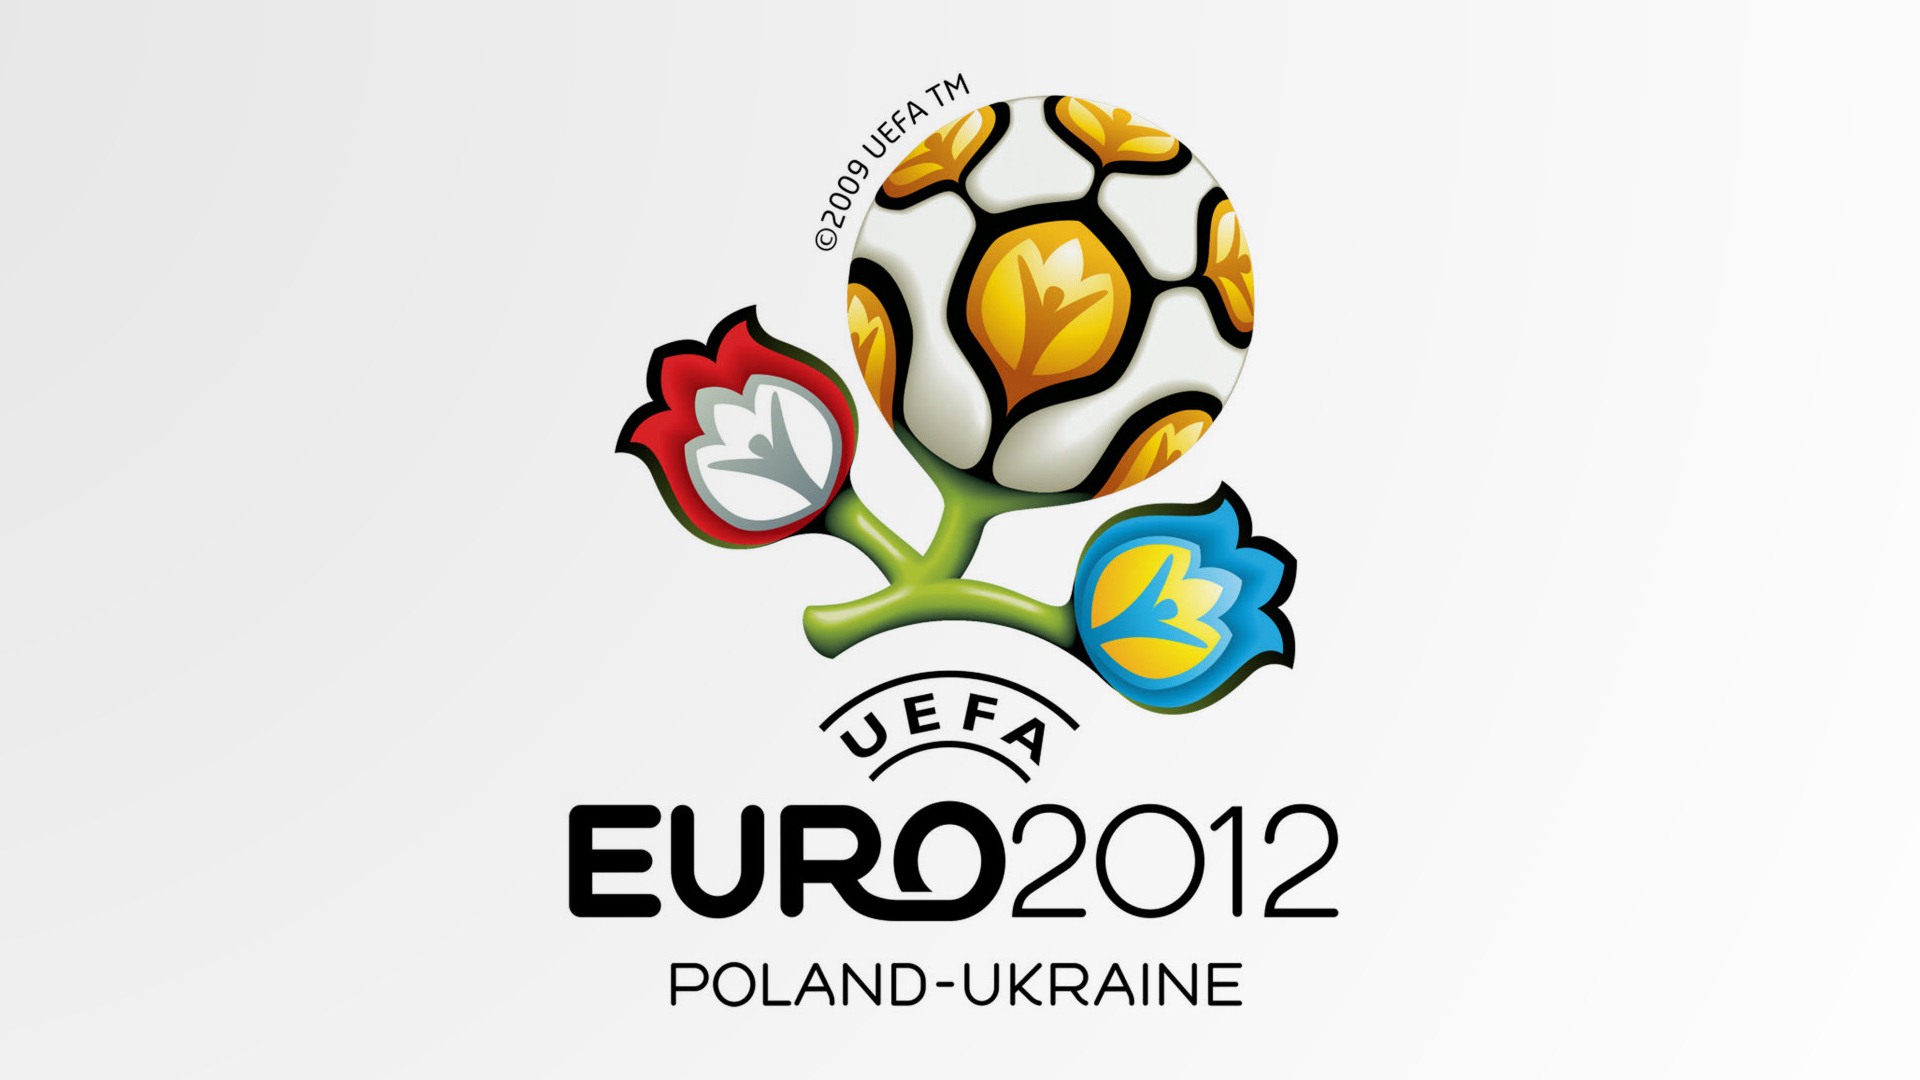 UEFA EURO 2012 欧洲足球锦标赛 高清壁纸(二)1 - 1920x1080